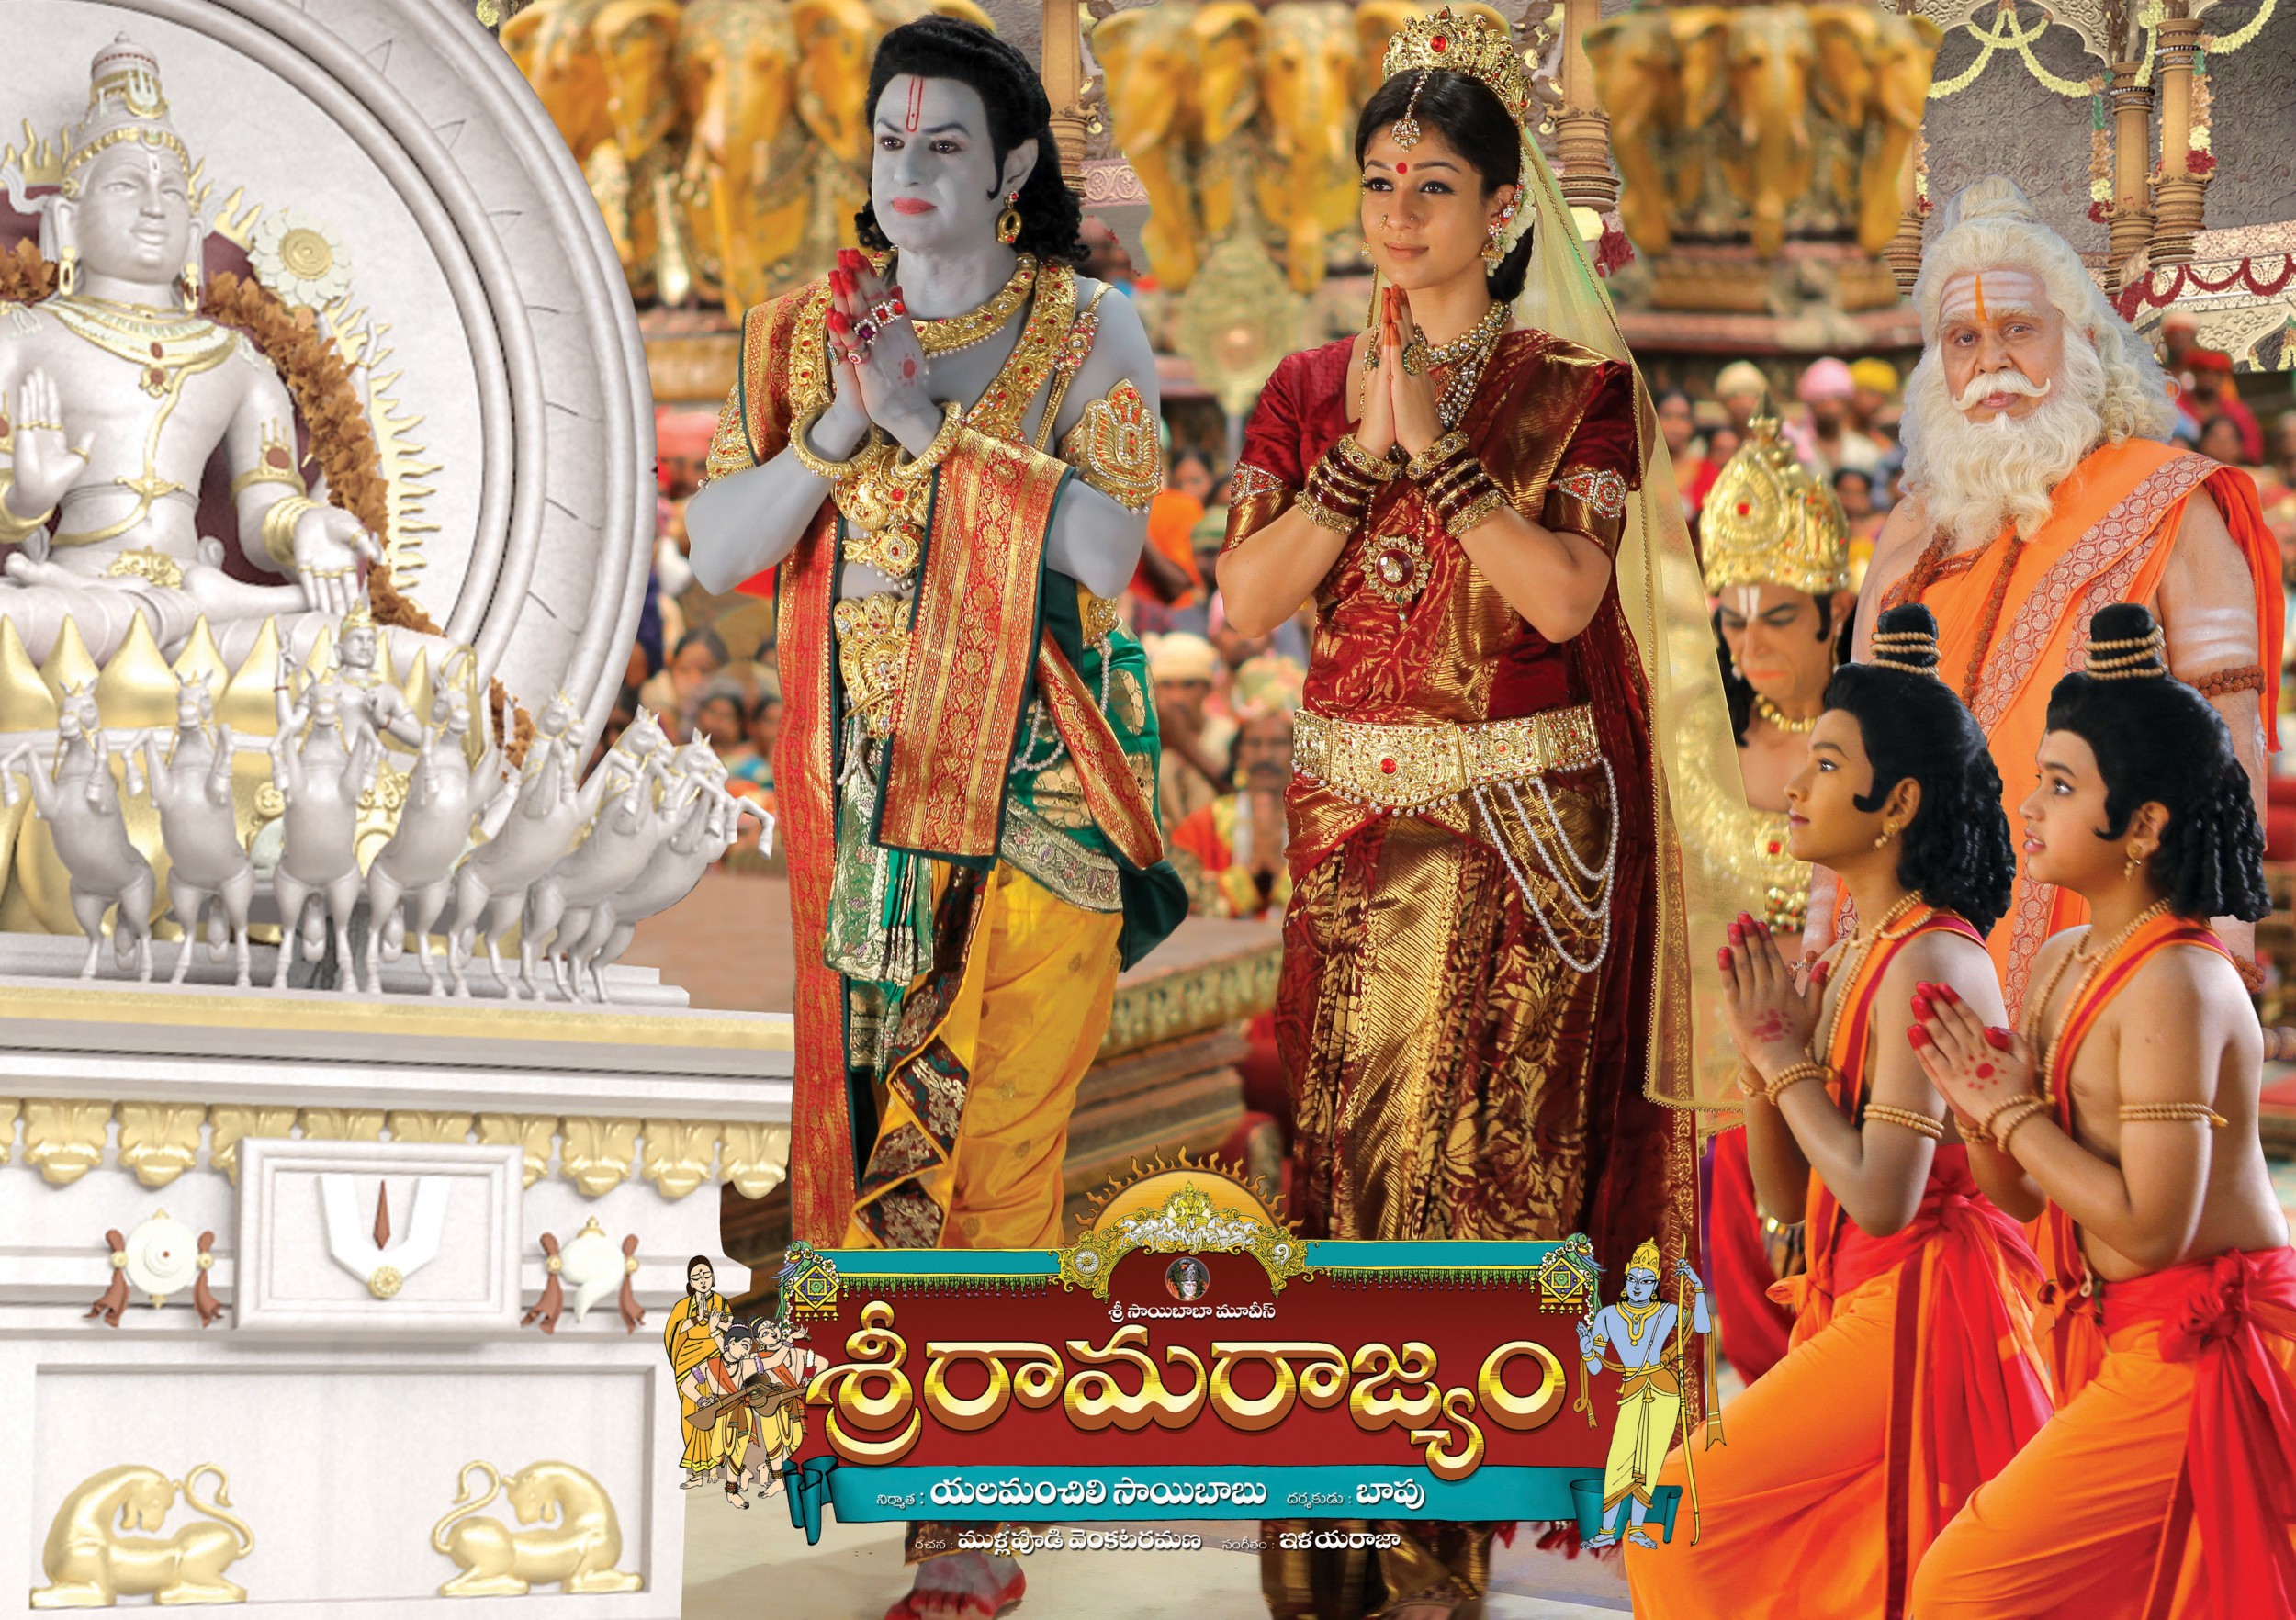 Mega Sized Movie Poster Image for Sri Rama Rajyam (#7 of 10)